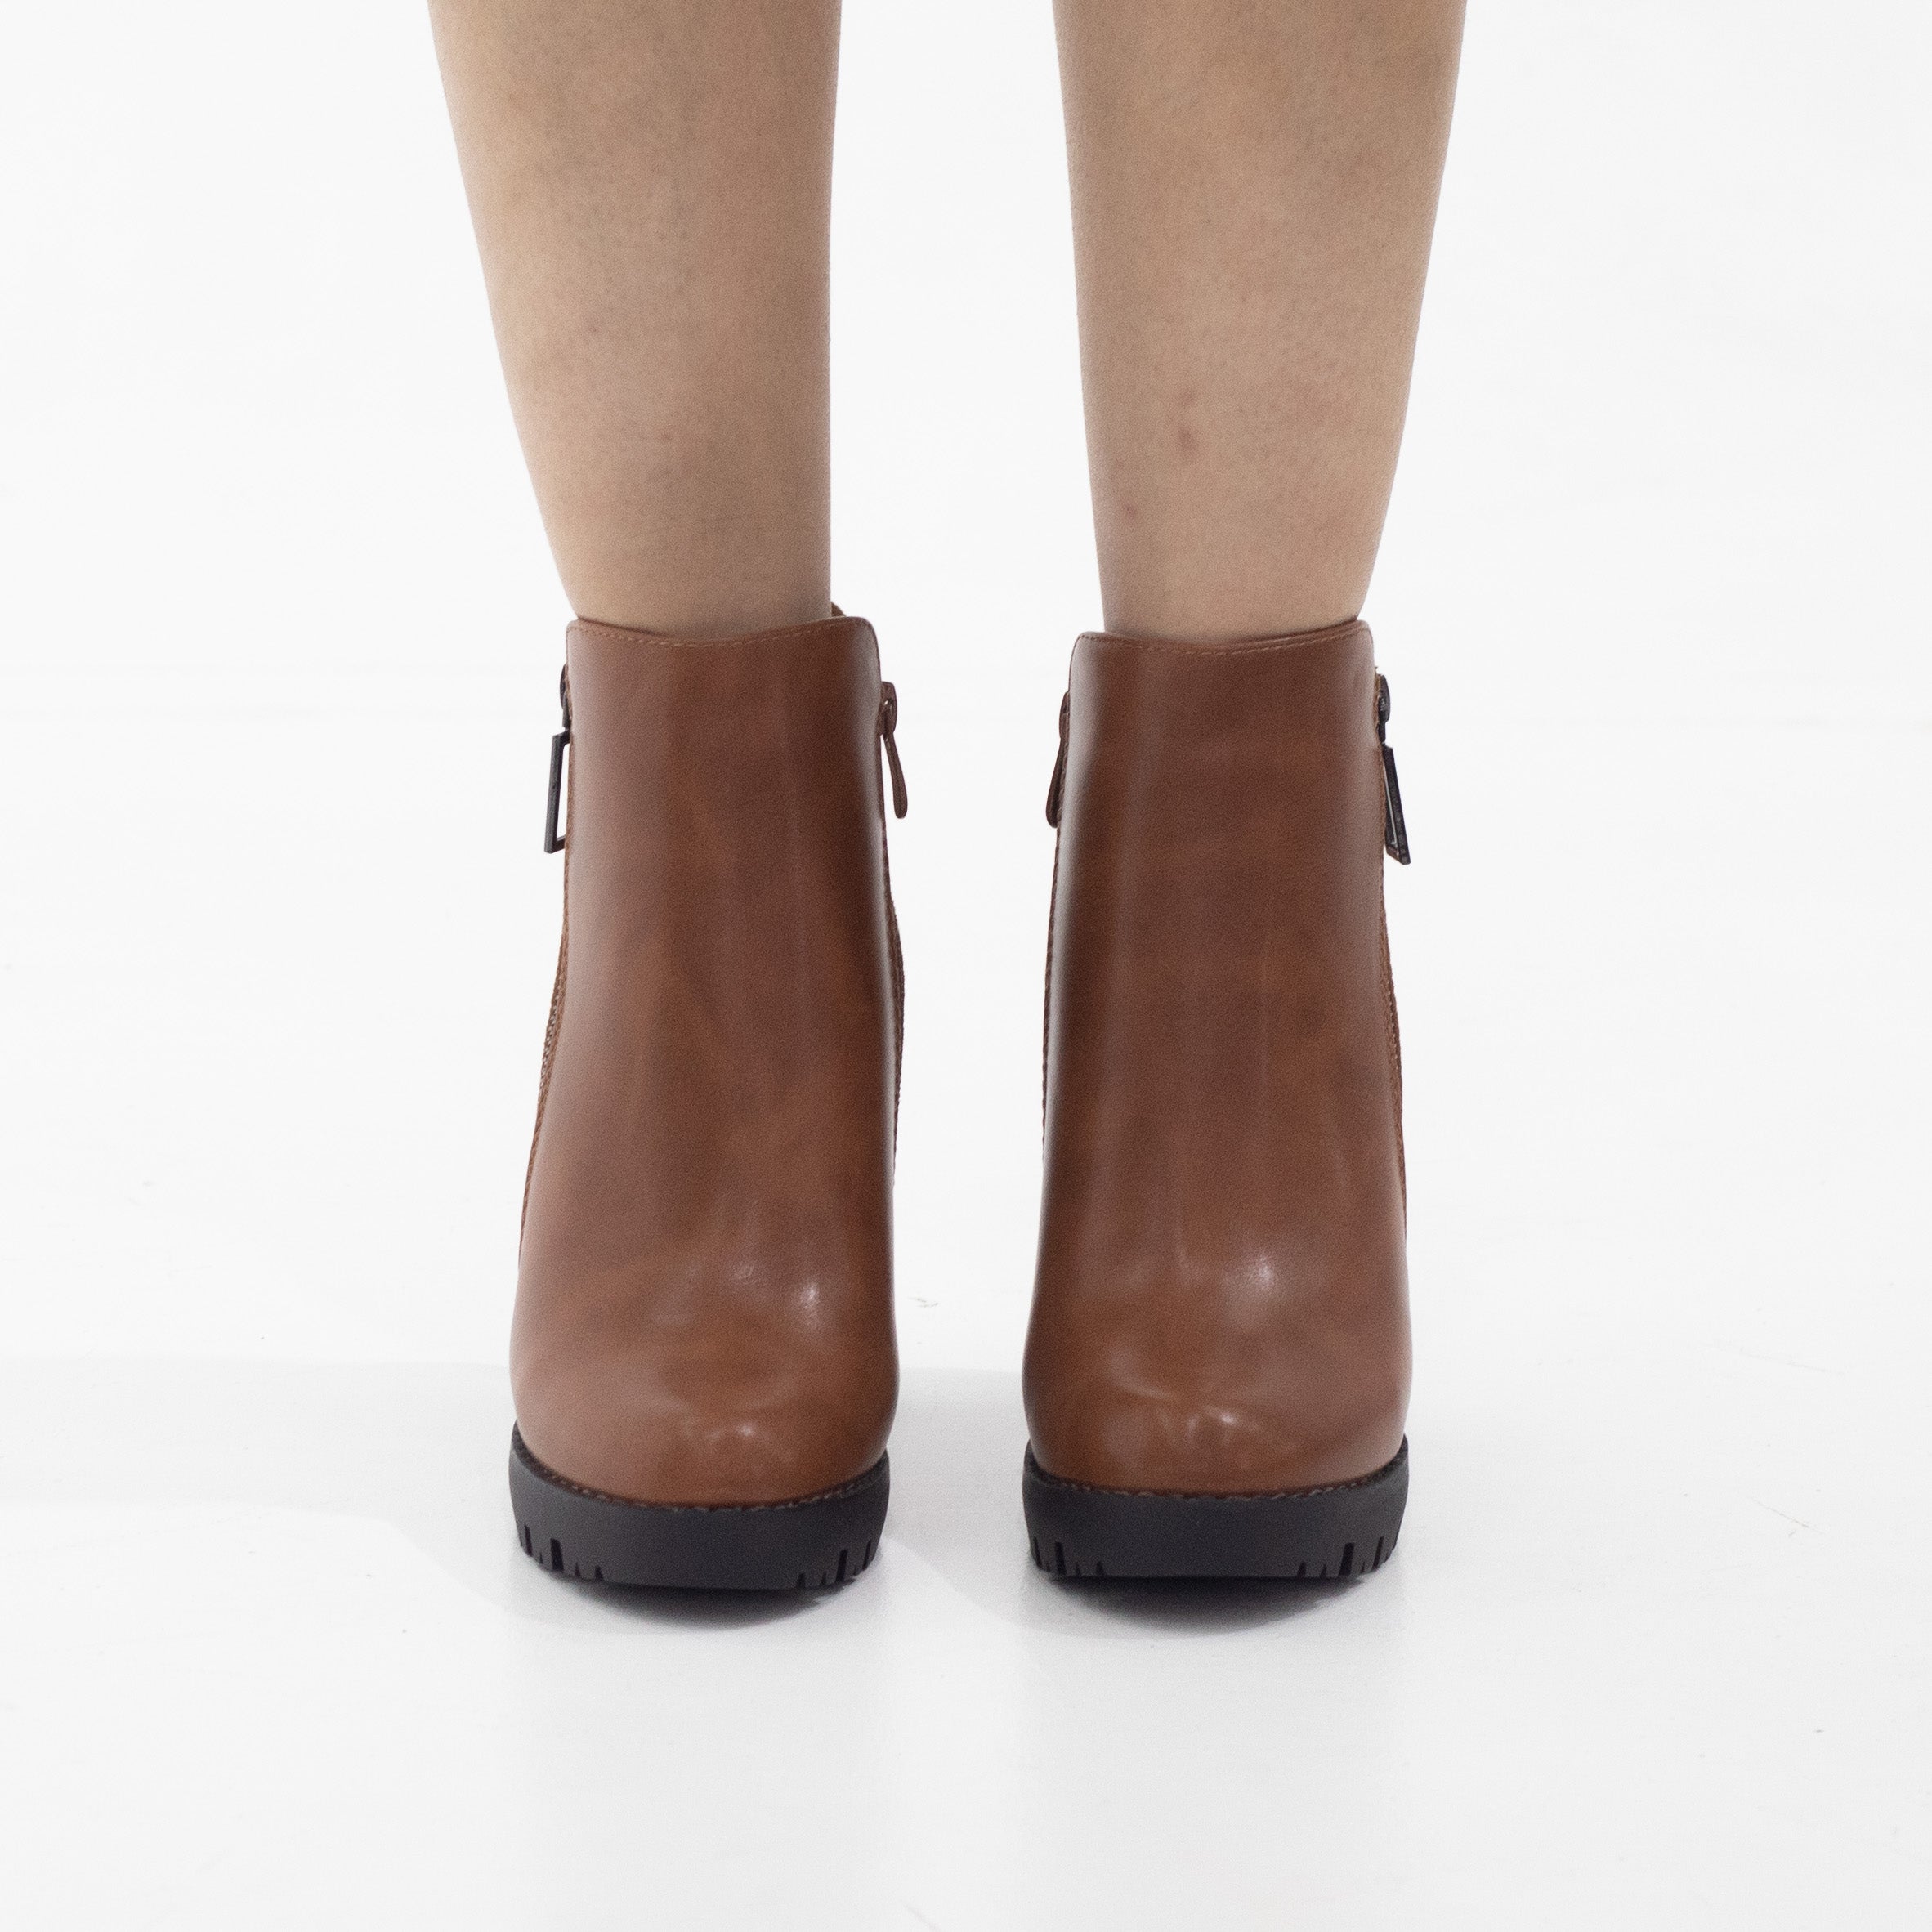 Tan 10cm heel side zip ankle boot uplift